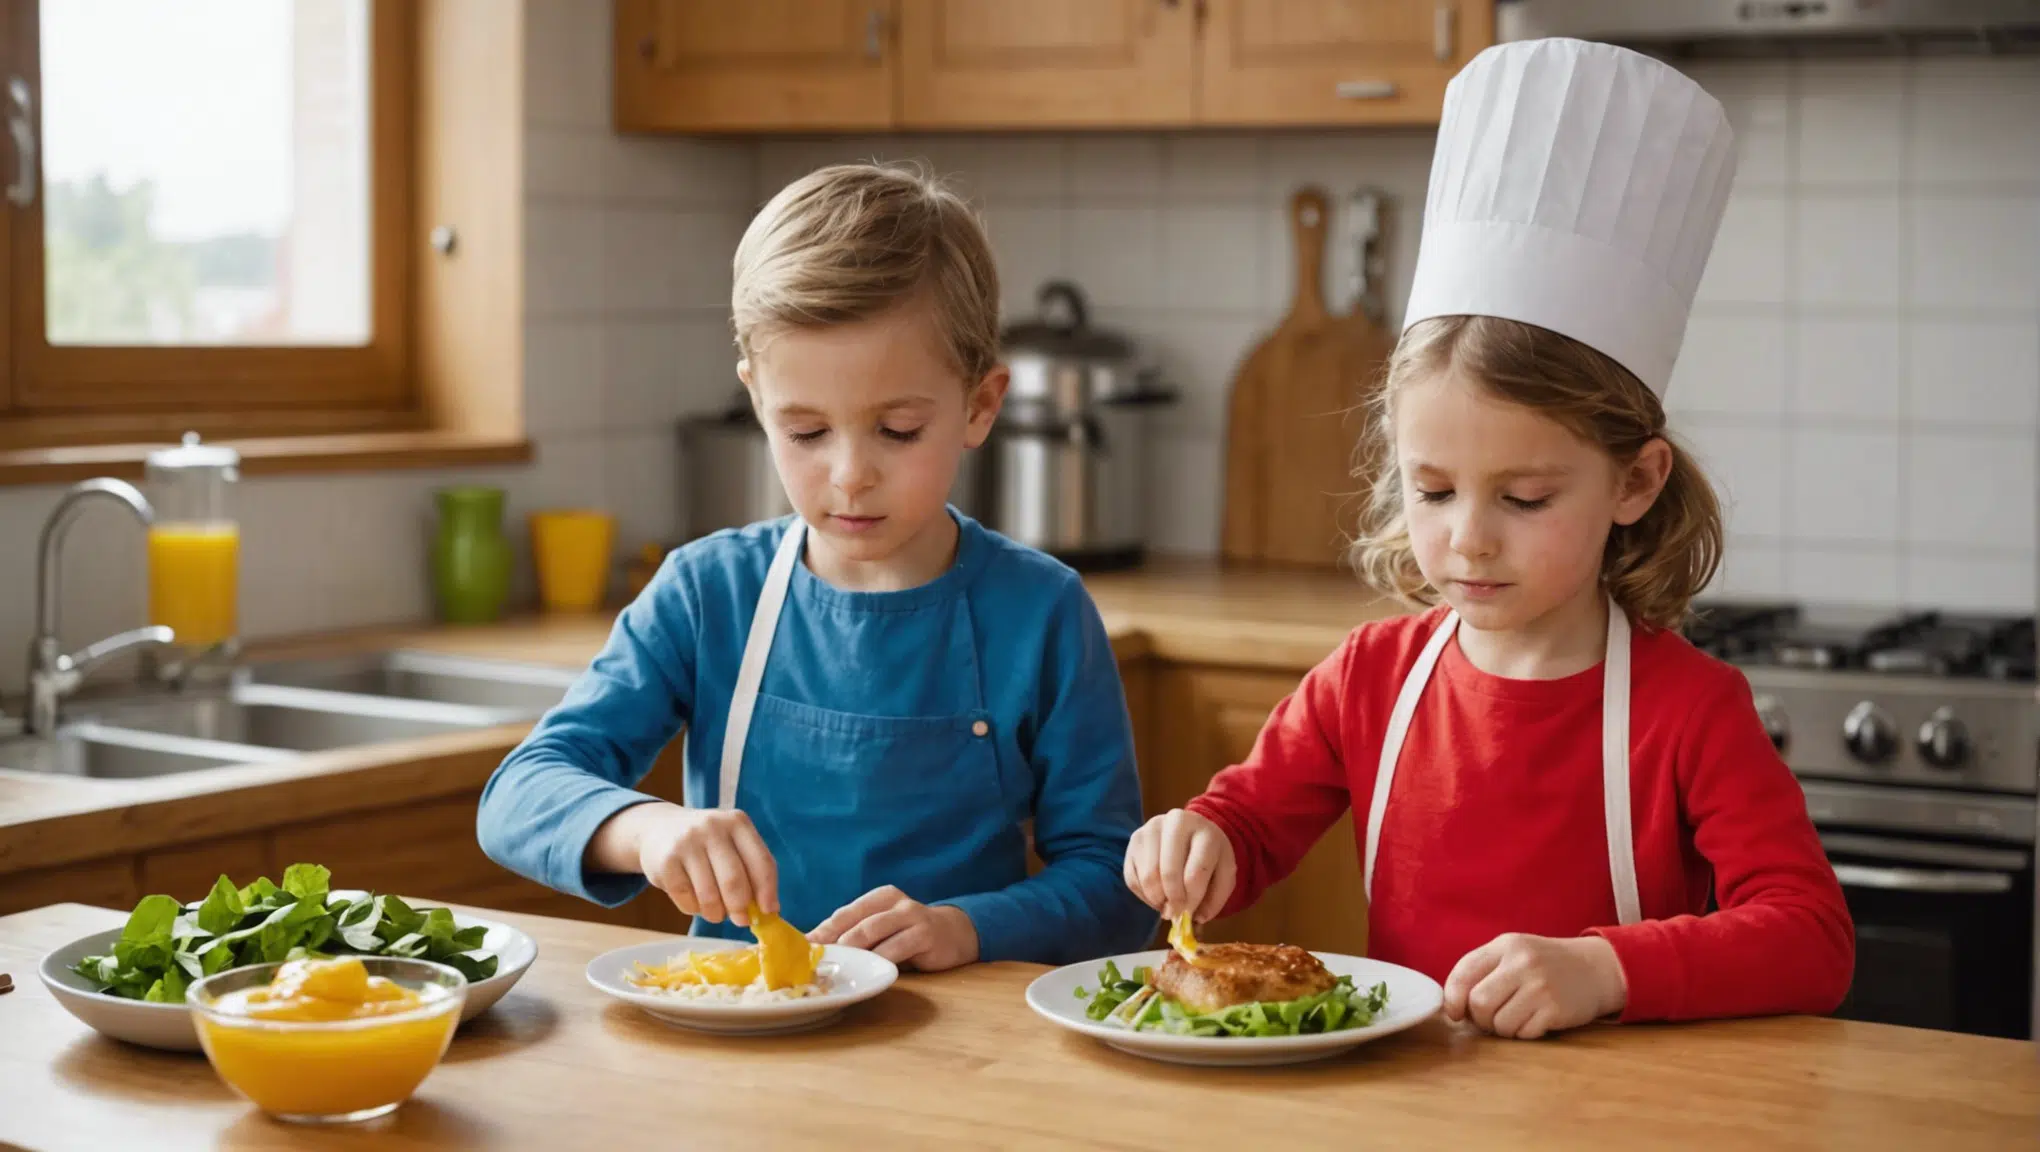 découvrez comment susciter la curiosité des enfants pour la cuisine grâce à des activités ludiques et éducatives. astuces et conseils pour éveiller leur intérêt et développer leur plaisir de cuisiner.